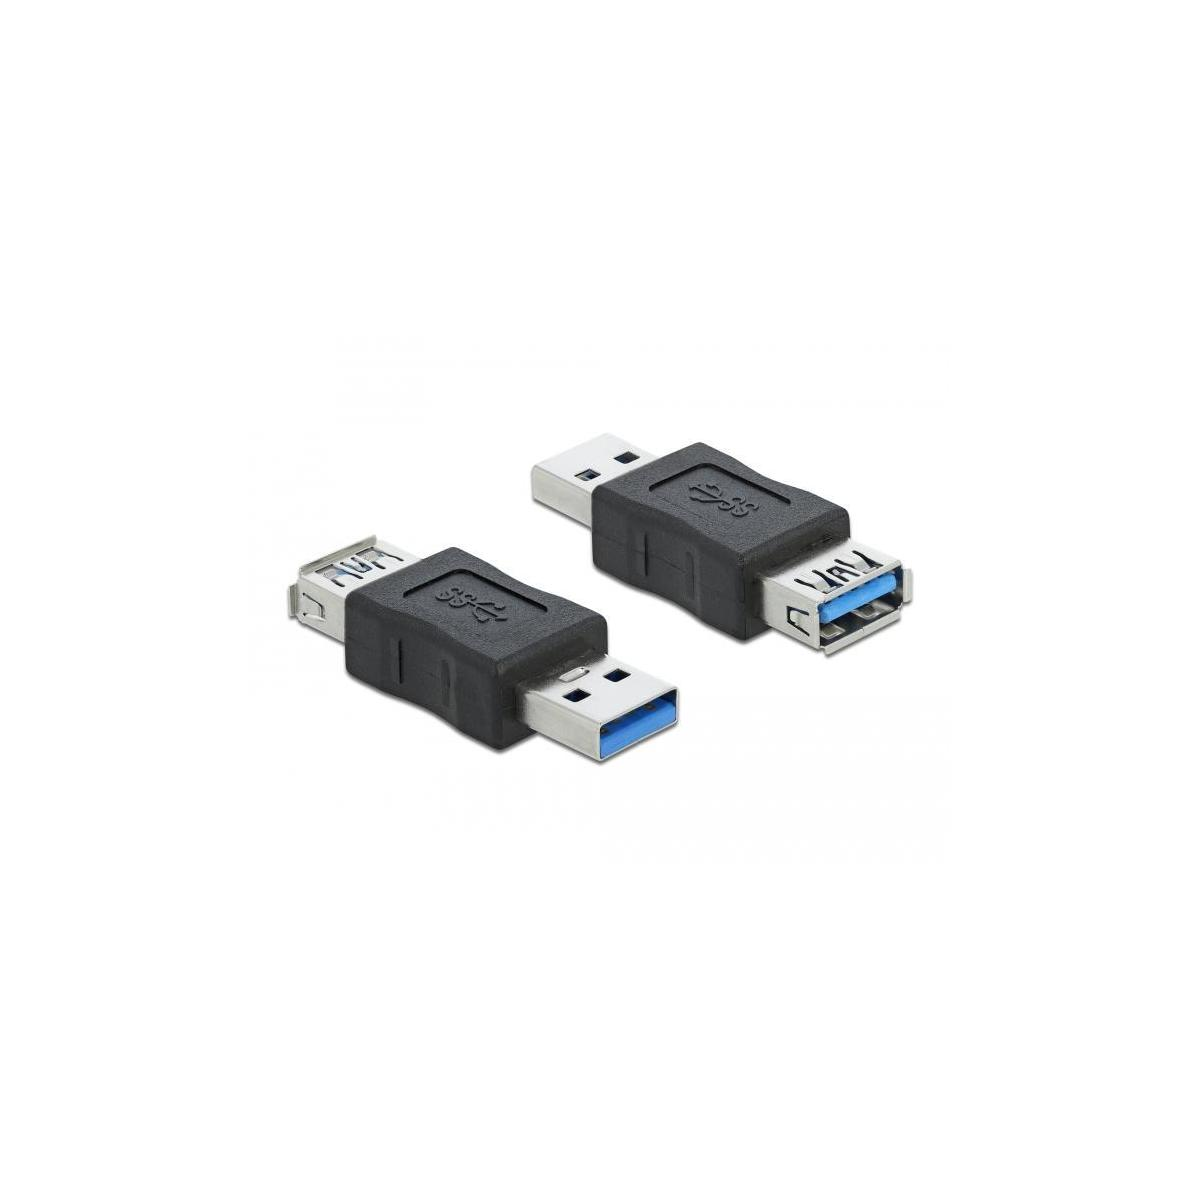 Zubehör Bu & & Adapter Typ-A zu DELOCK Adapter, Schwarz Peripheriegeräte Kabel USB ST DELOCK 3.0 Kabel